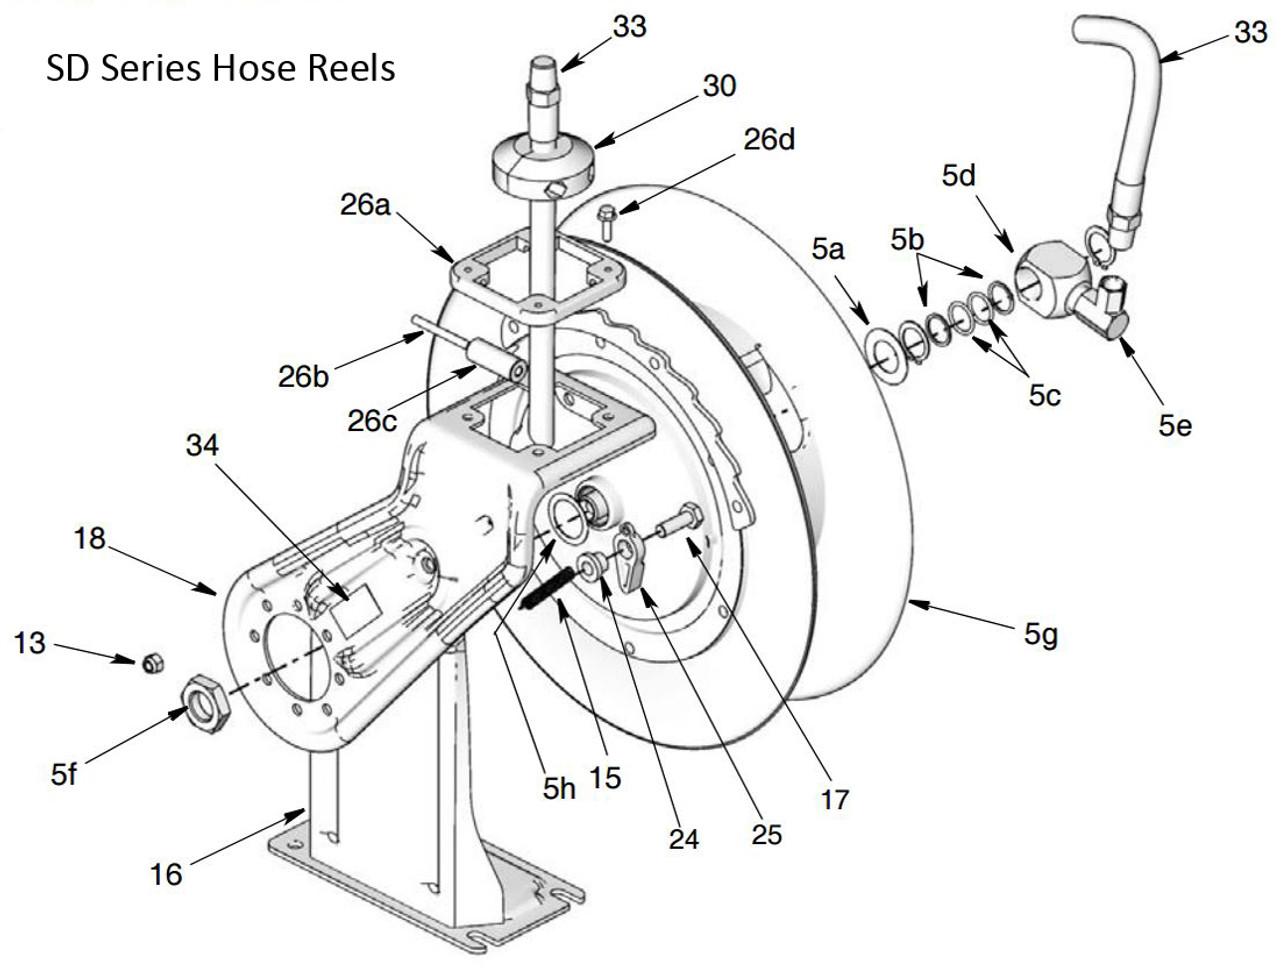 Graco SD Series Air/Water Hose Reel Spool Repair Kits For HPL25B